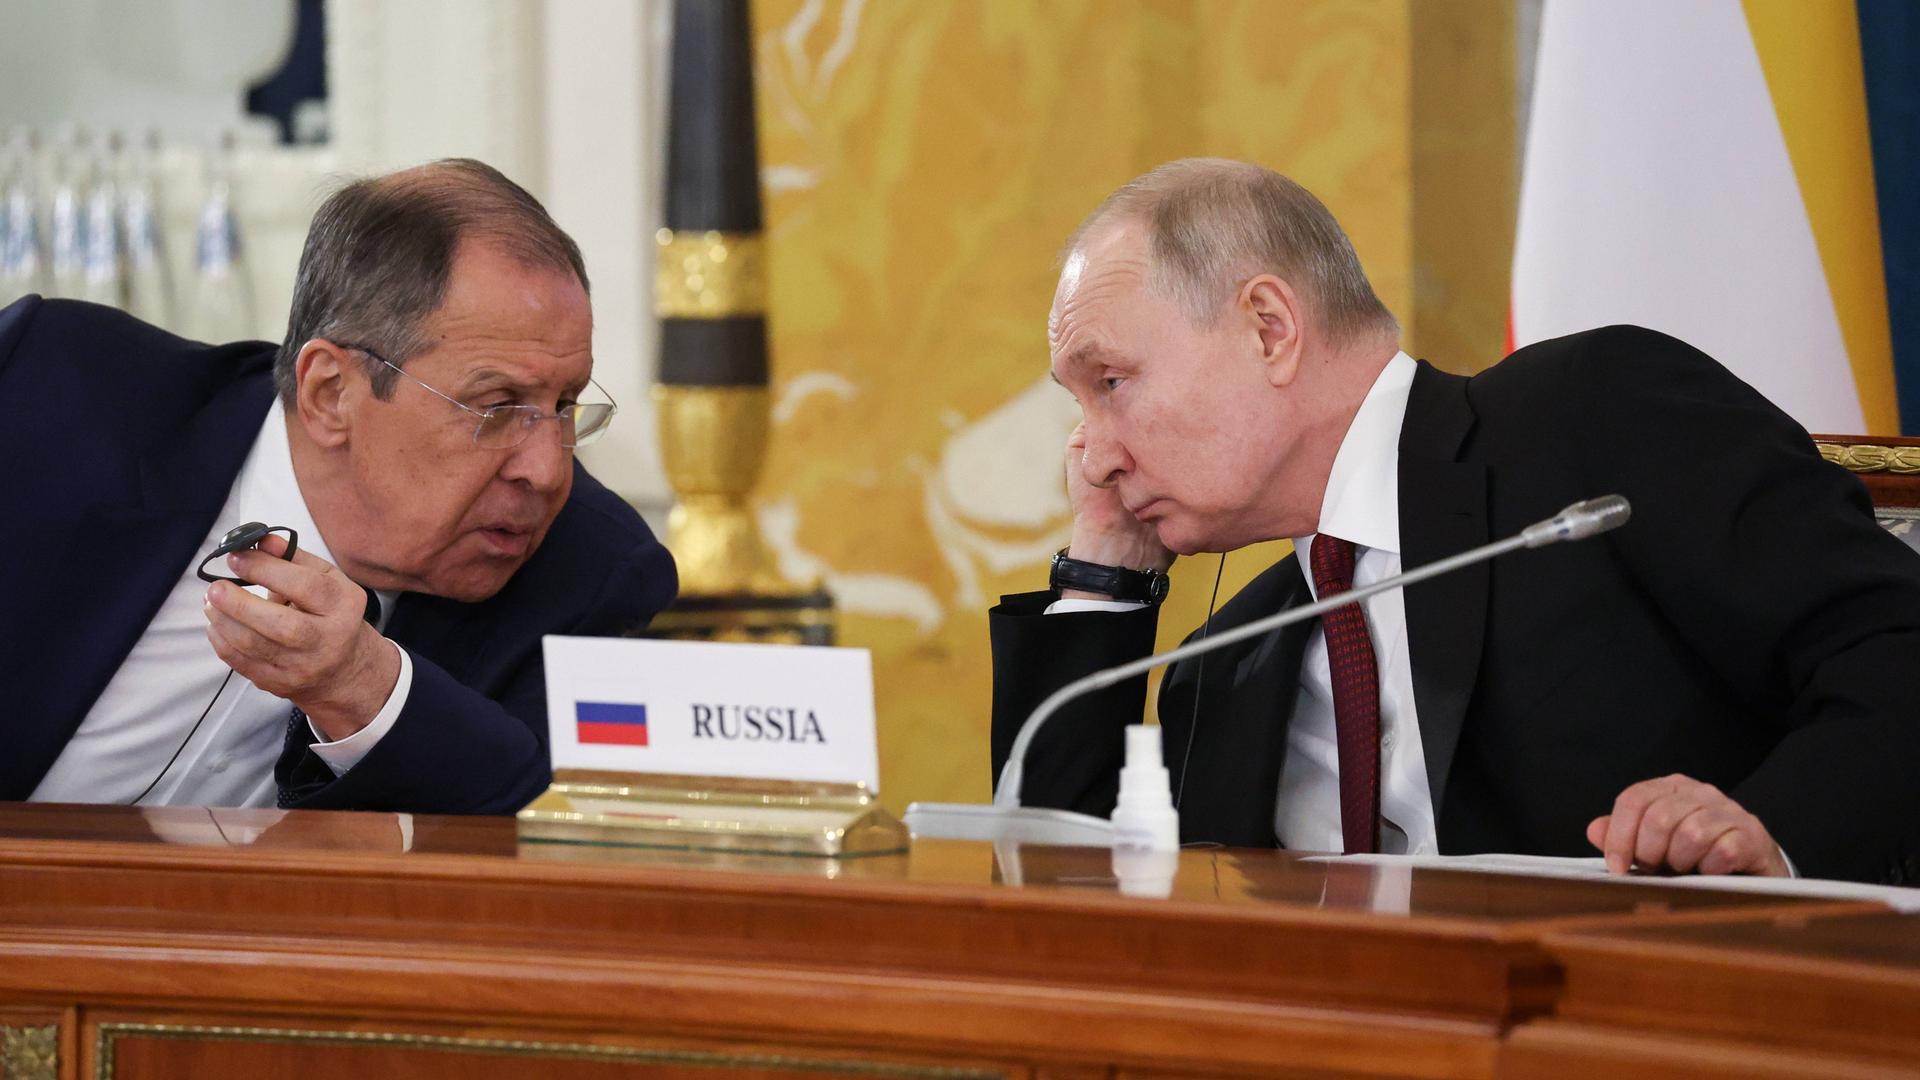 Russlands Präsident Putin und der russische Außenminister Lawrow im Gespräch bei einer Konferenz. Zwischen ihnen steht ein Schild auf dem Tisch mit der Aufschrift "Russia"